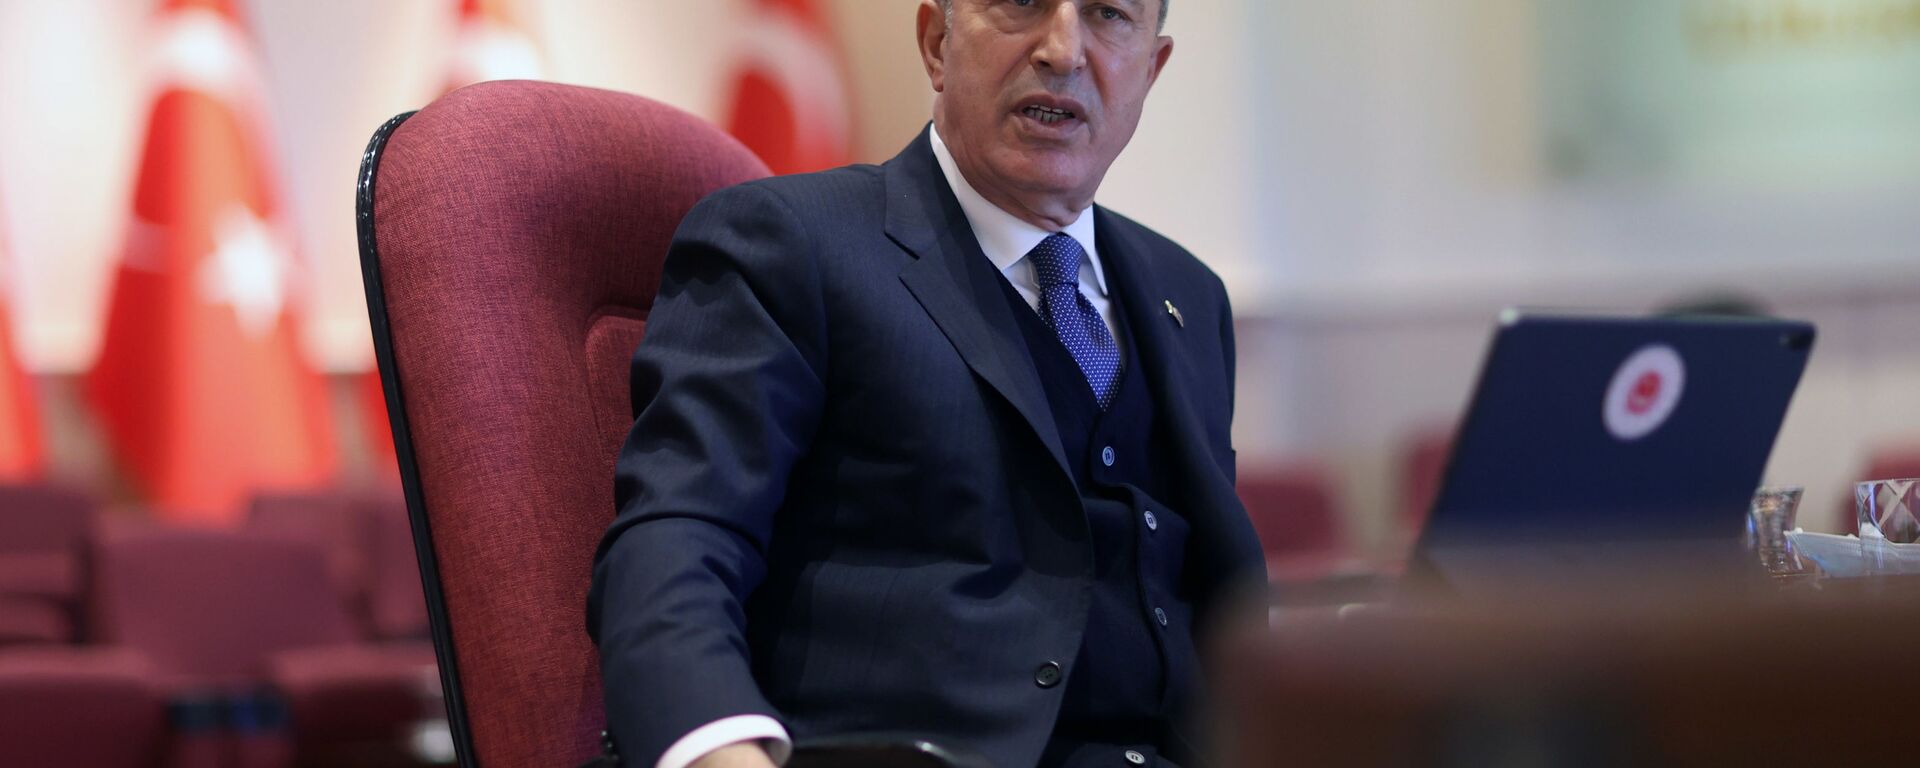 Министр национальной обороны Турции Хулуси Акар, фото из архива - Sputnik Азербайджан, 1920, 18.03.2021